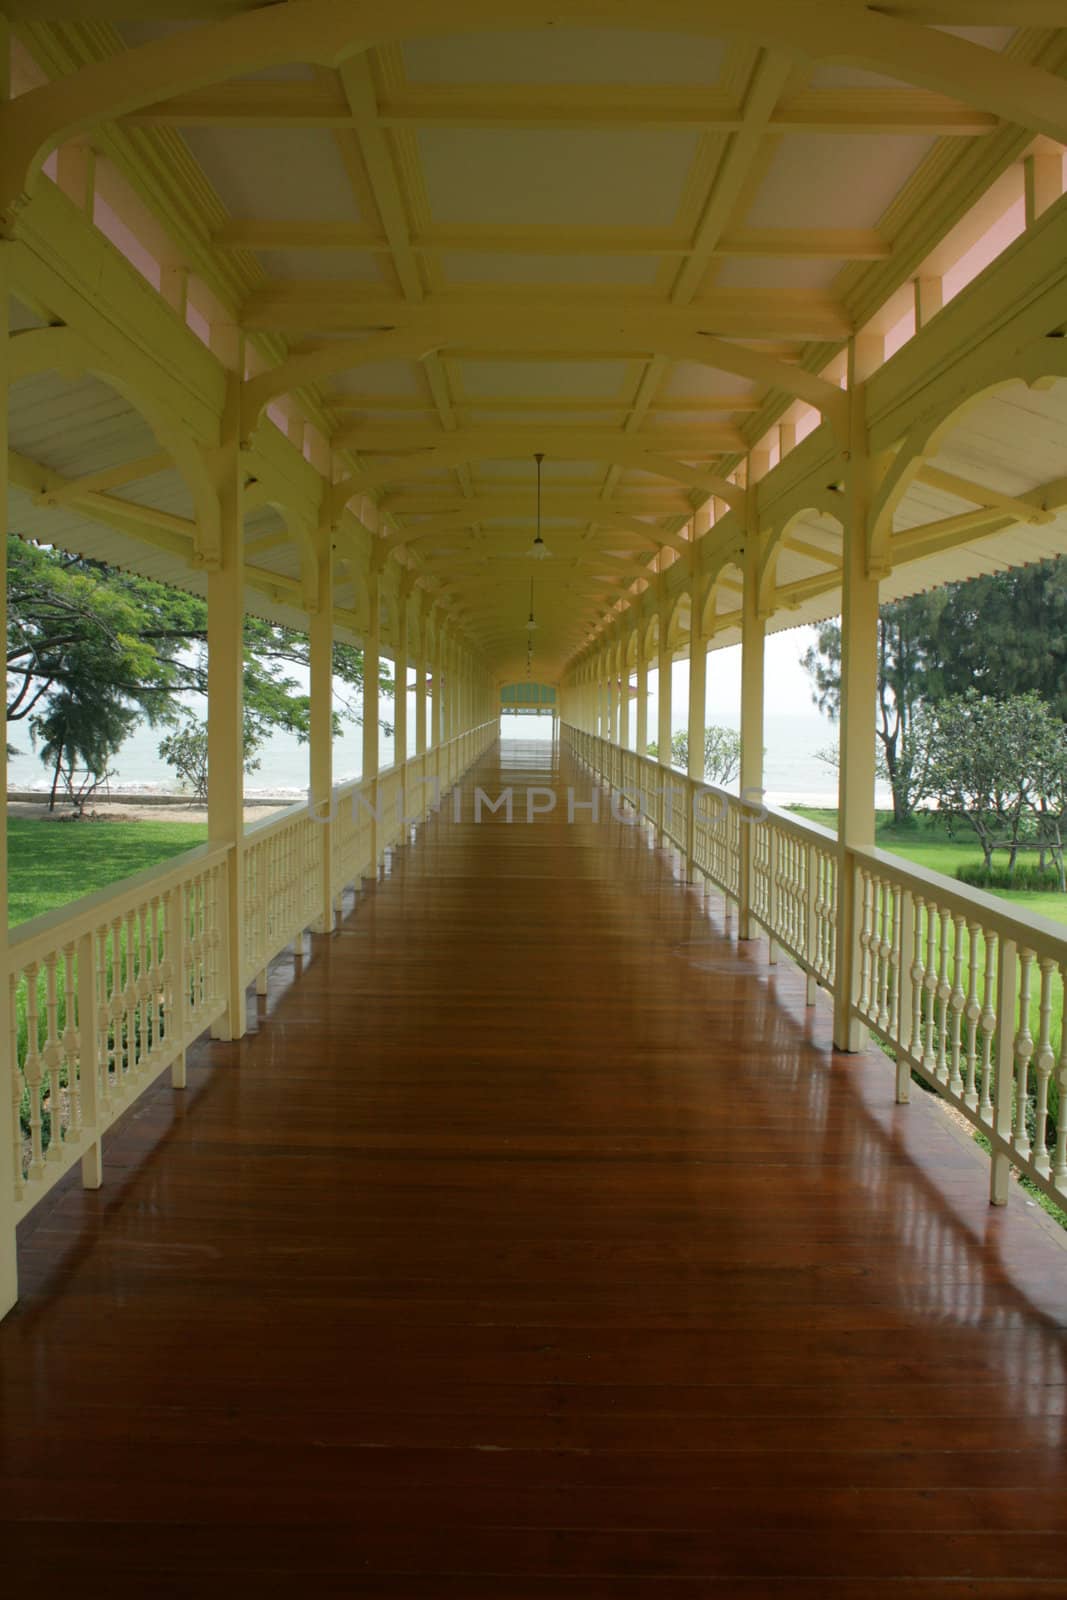 A corridor at Maruekkha-thaiyawan Palace, Thailand